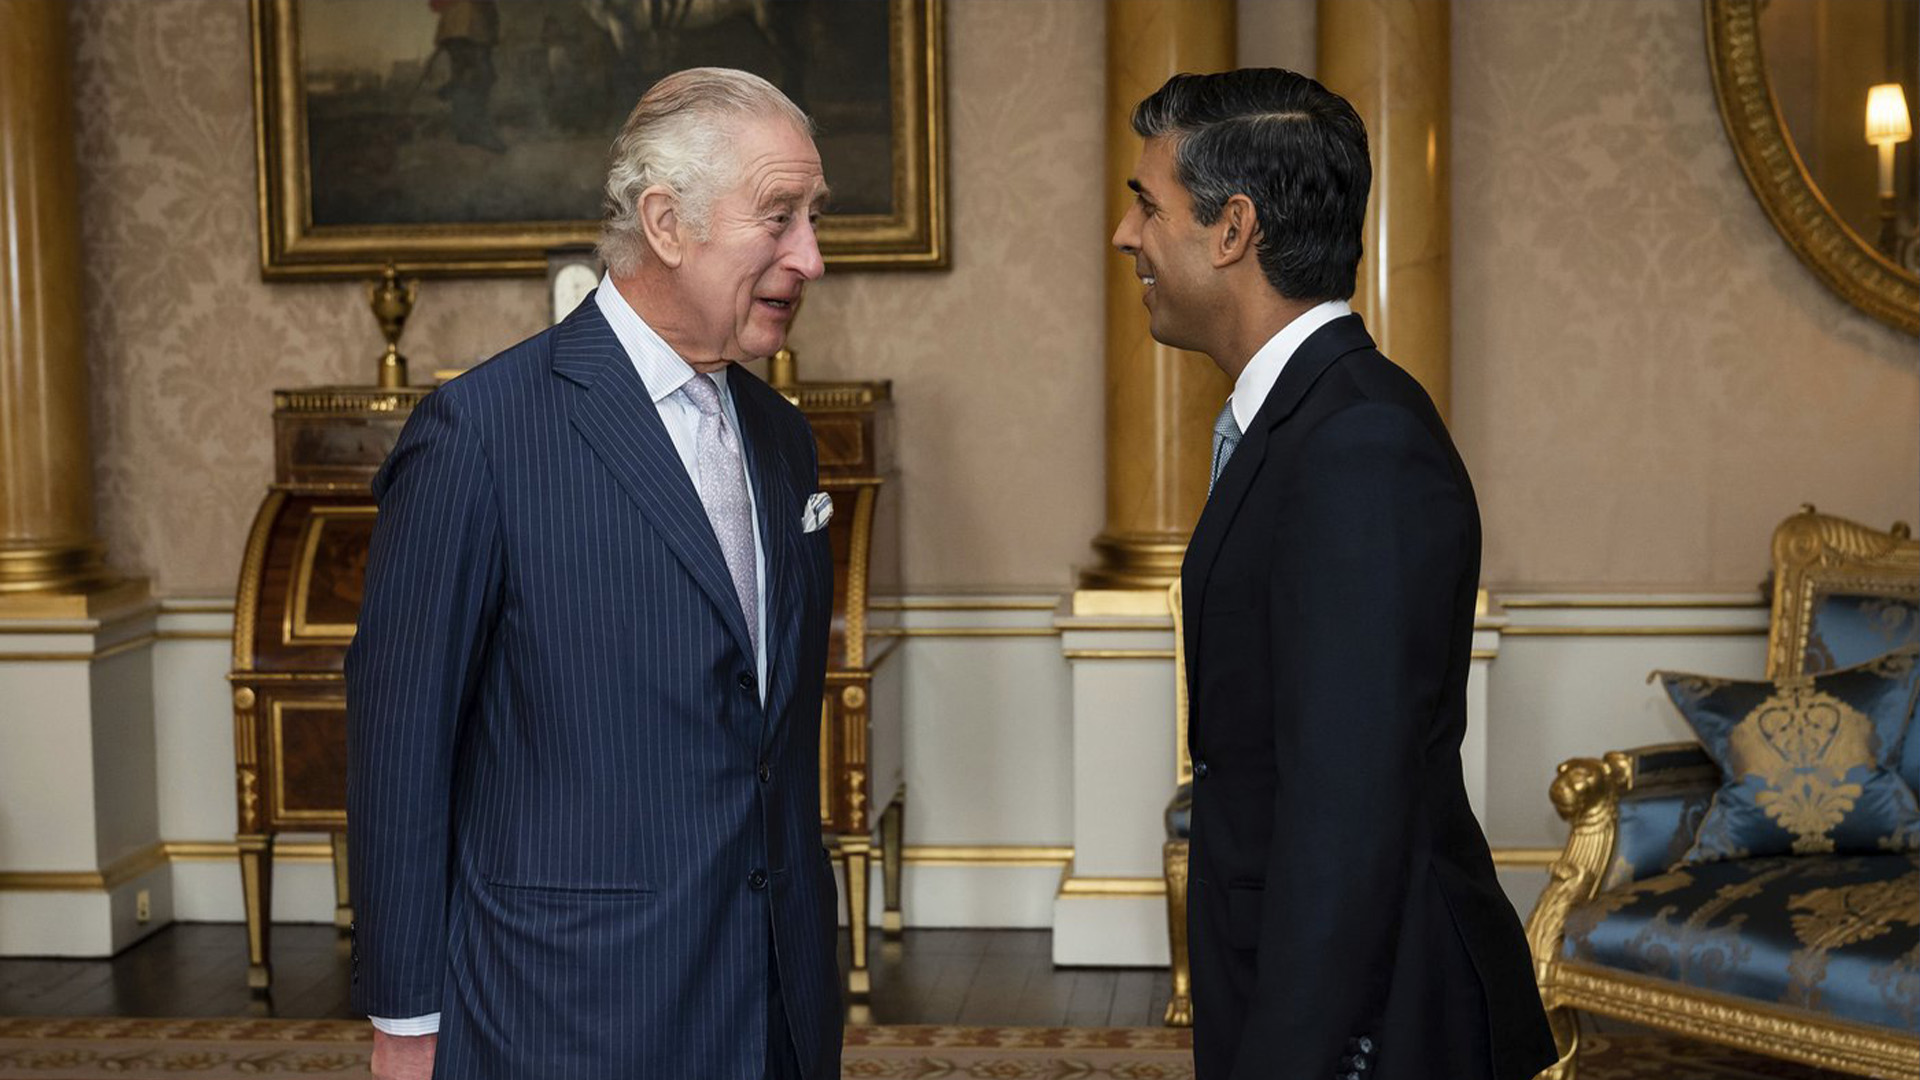 Le roi Charles III accueille Rishi Sunak lors d'une audience au palais de Buckingham, à Londres, où il a invité le chef nouvellement élu du Parti conservateur à devenir Premier ministre et à former un nouveau gouvernement, le mardi 25 octobre 2022.